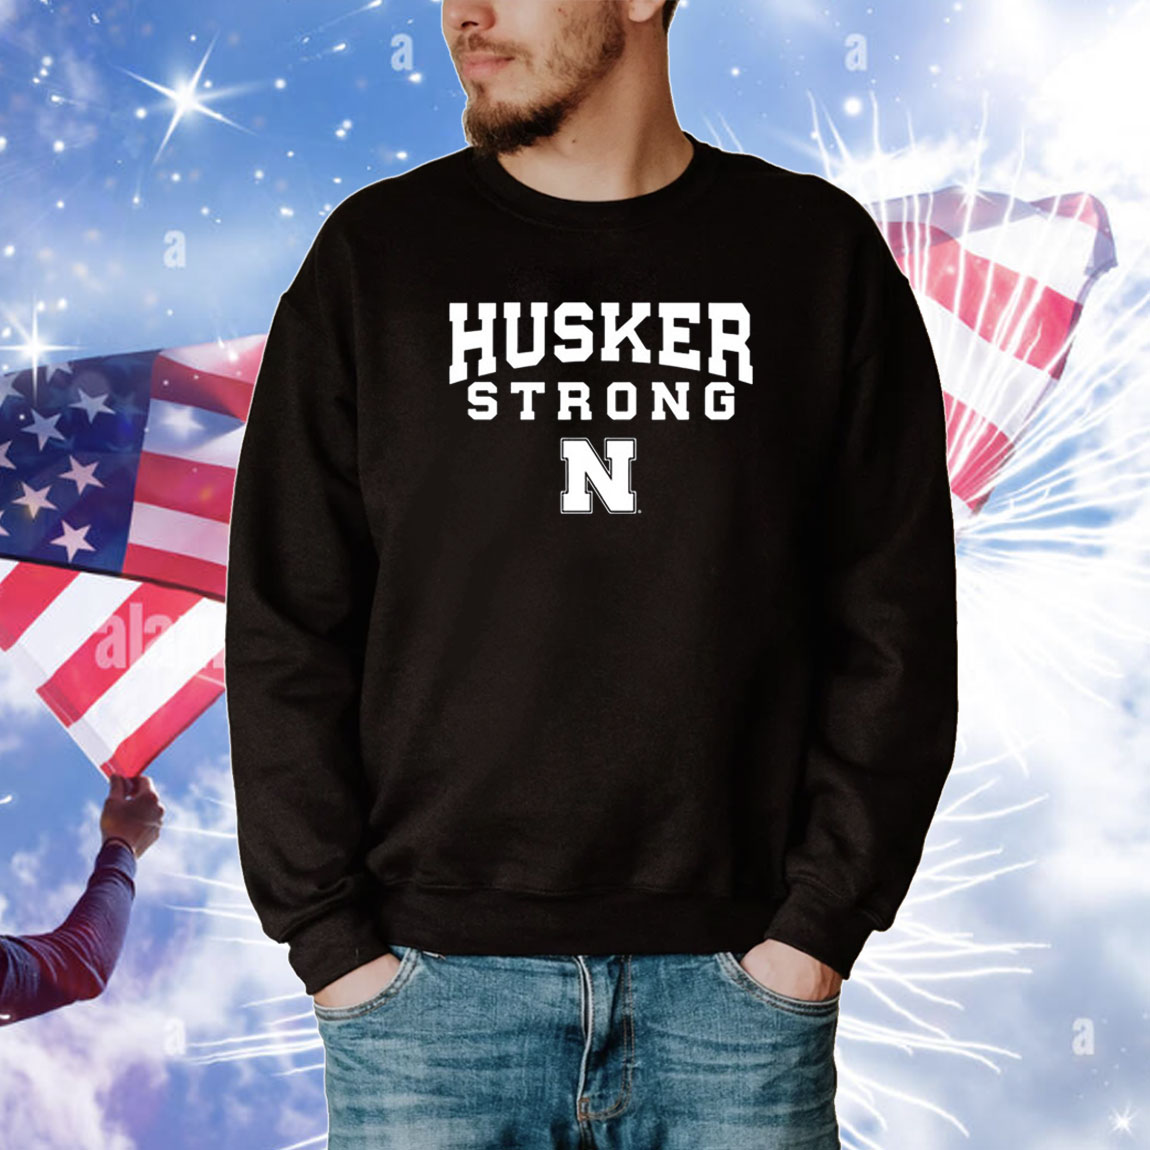 Nebraska Husker Strong Tee Shirts